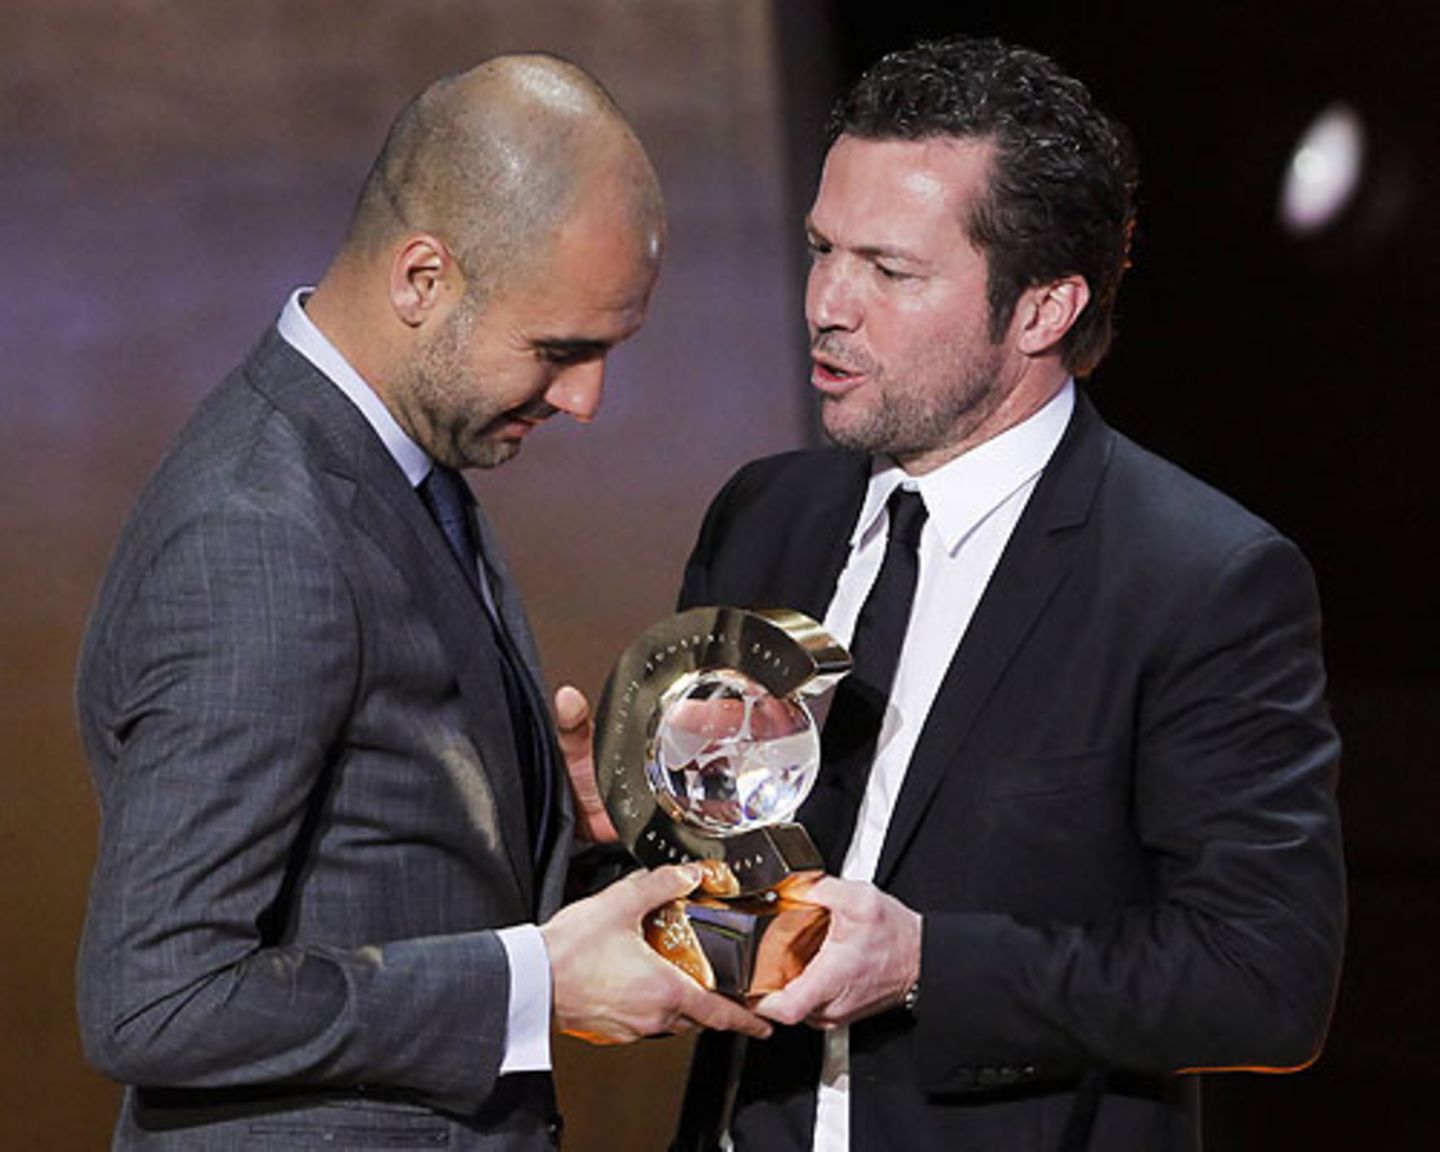 Als Spieler waren sie beide höchst erfolgreich, als Trainer hat Guardiola seinen Kollegen überflügelt: Bei der Fifa World Player Gala in Zürich Anfang 2012 wurde er als bester Trainer des Jahres 2011 ausgezeichnet. Lothar Matthäus durfte gratulieren.